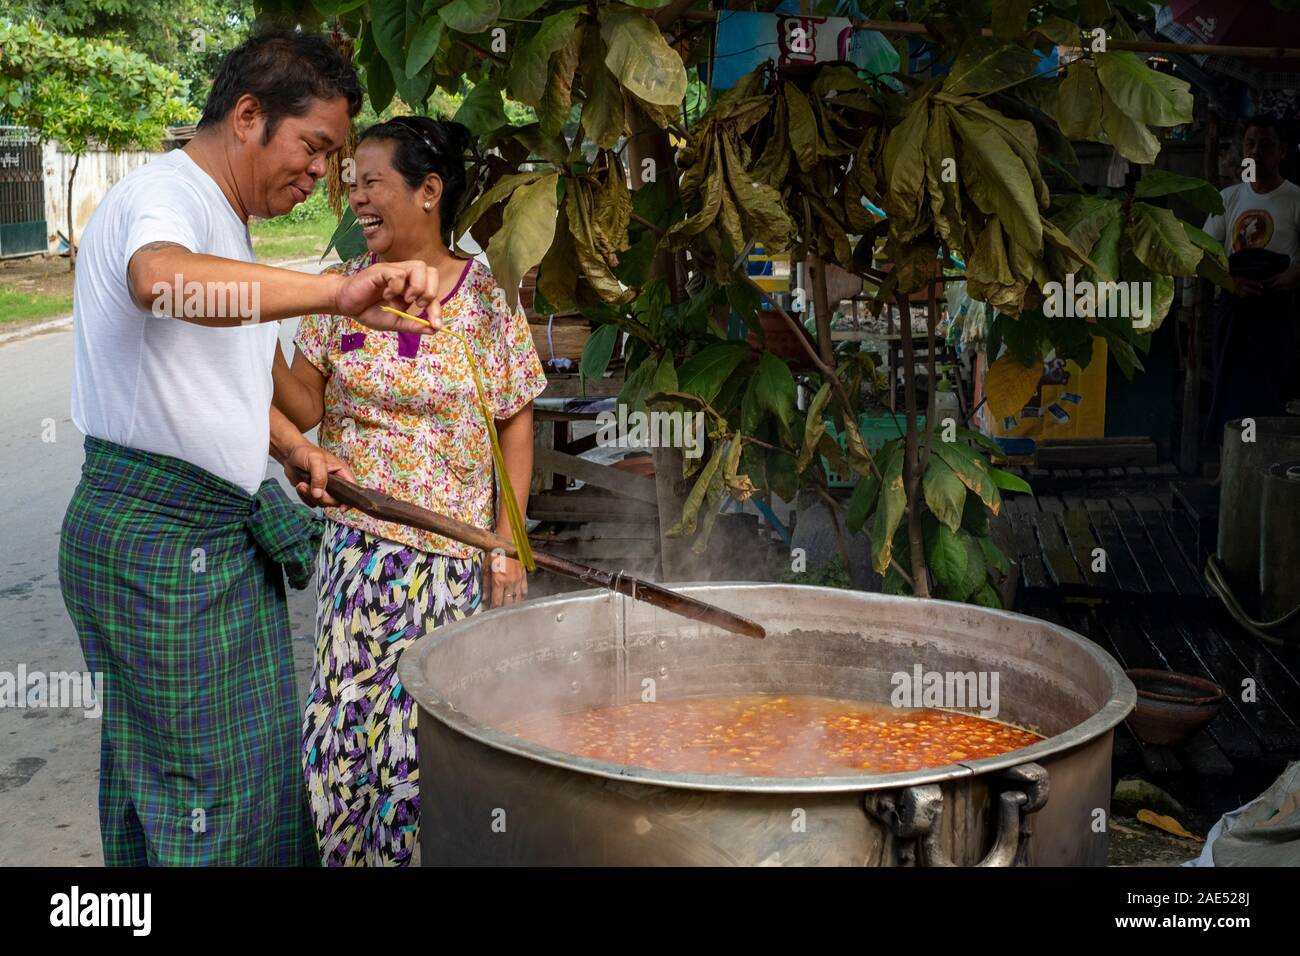 https://c8.alamy.com/compes/2ae528j/una-esposa-y-esposo-y-preparar-una-olla-grande-de-sopa-en-la-calle-para-alimentar-a-juerguistas-celebrando-una-fiesta-tradicional-ritual-en-mandalay-myanmar-birmania-2ae528j.jpg